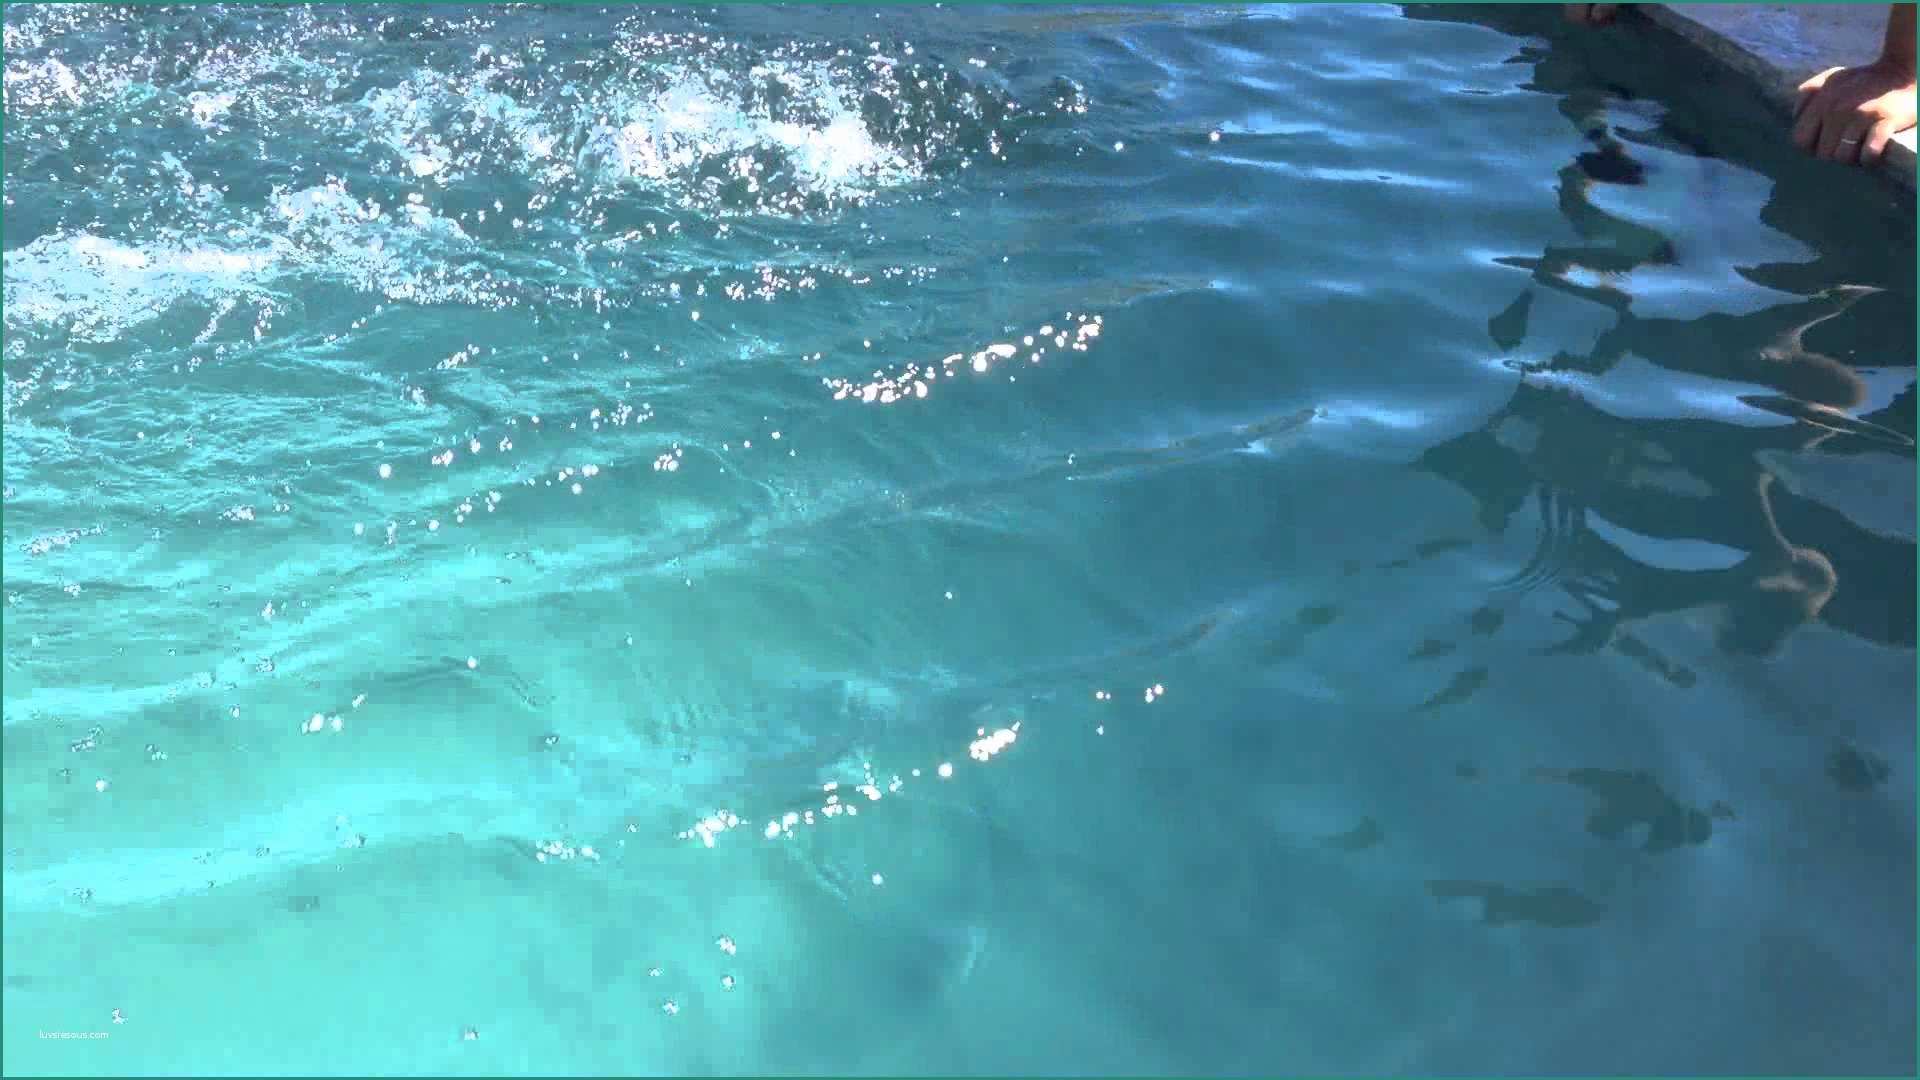 Minipiscine Nuoto Controcorrente E Nuoto Dimensioni Minime Nuoto Immagini Stock Idee Di Per Persone